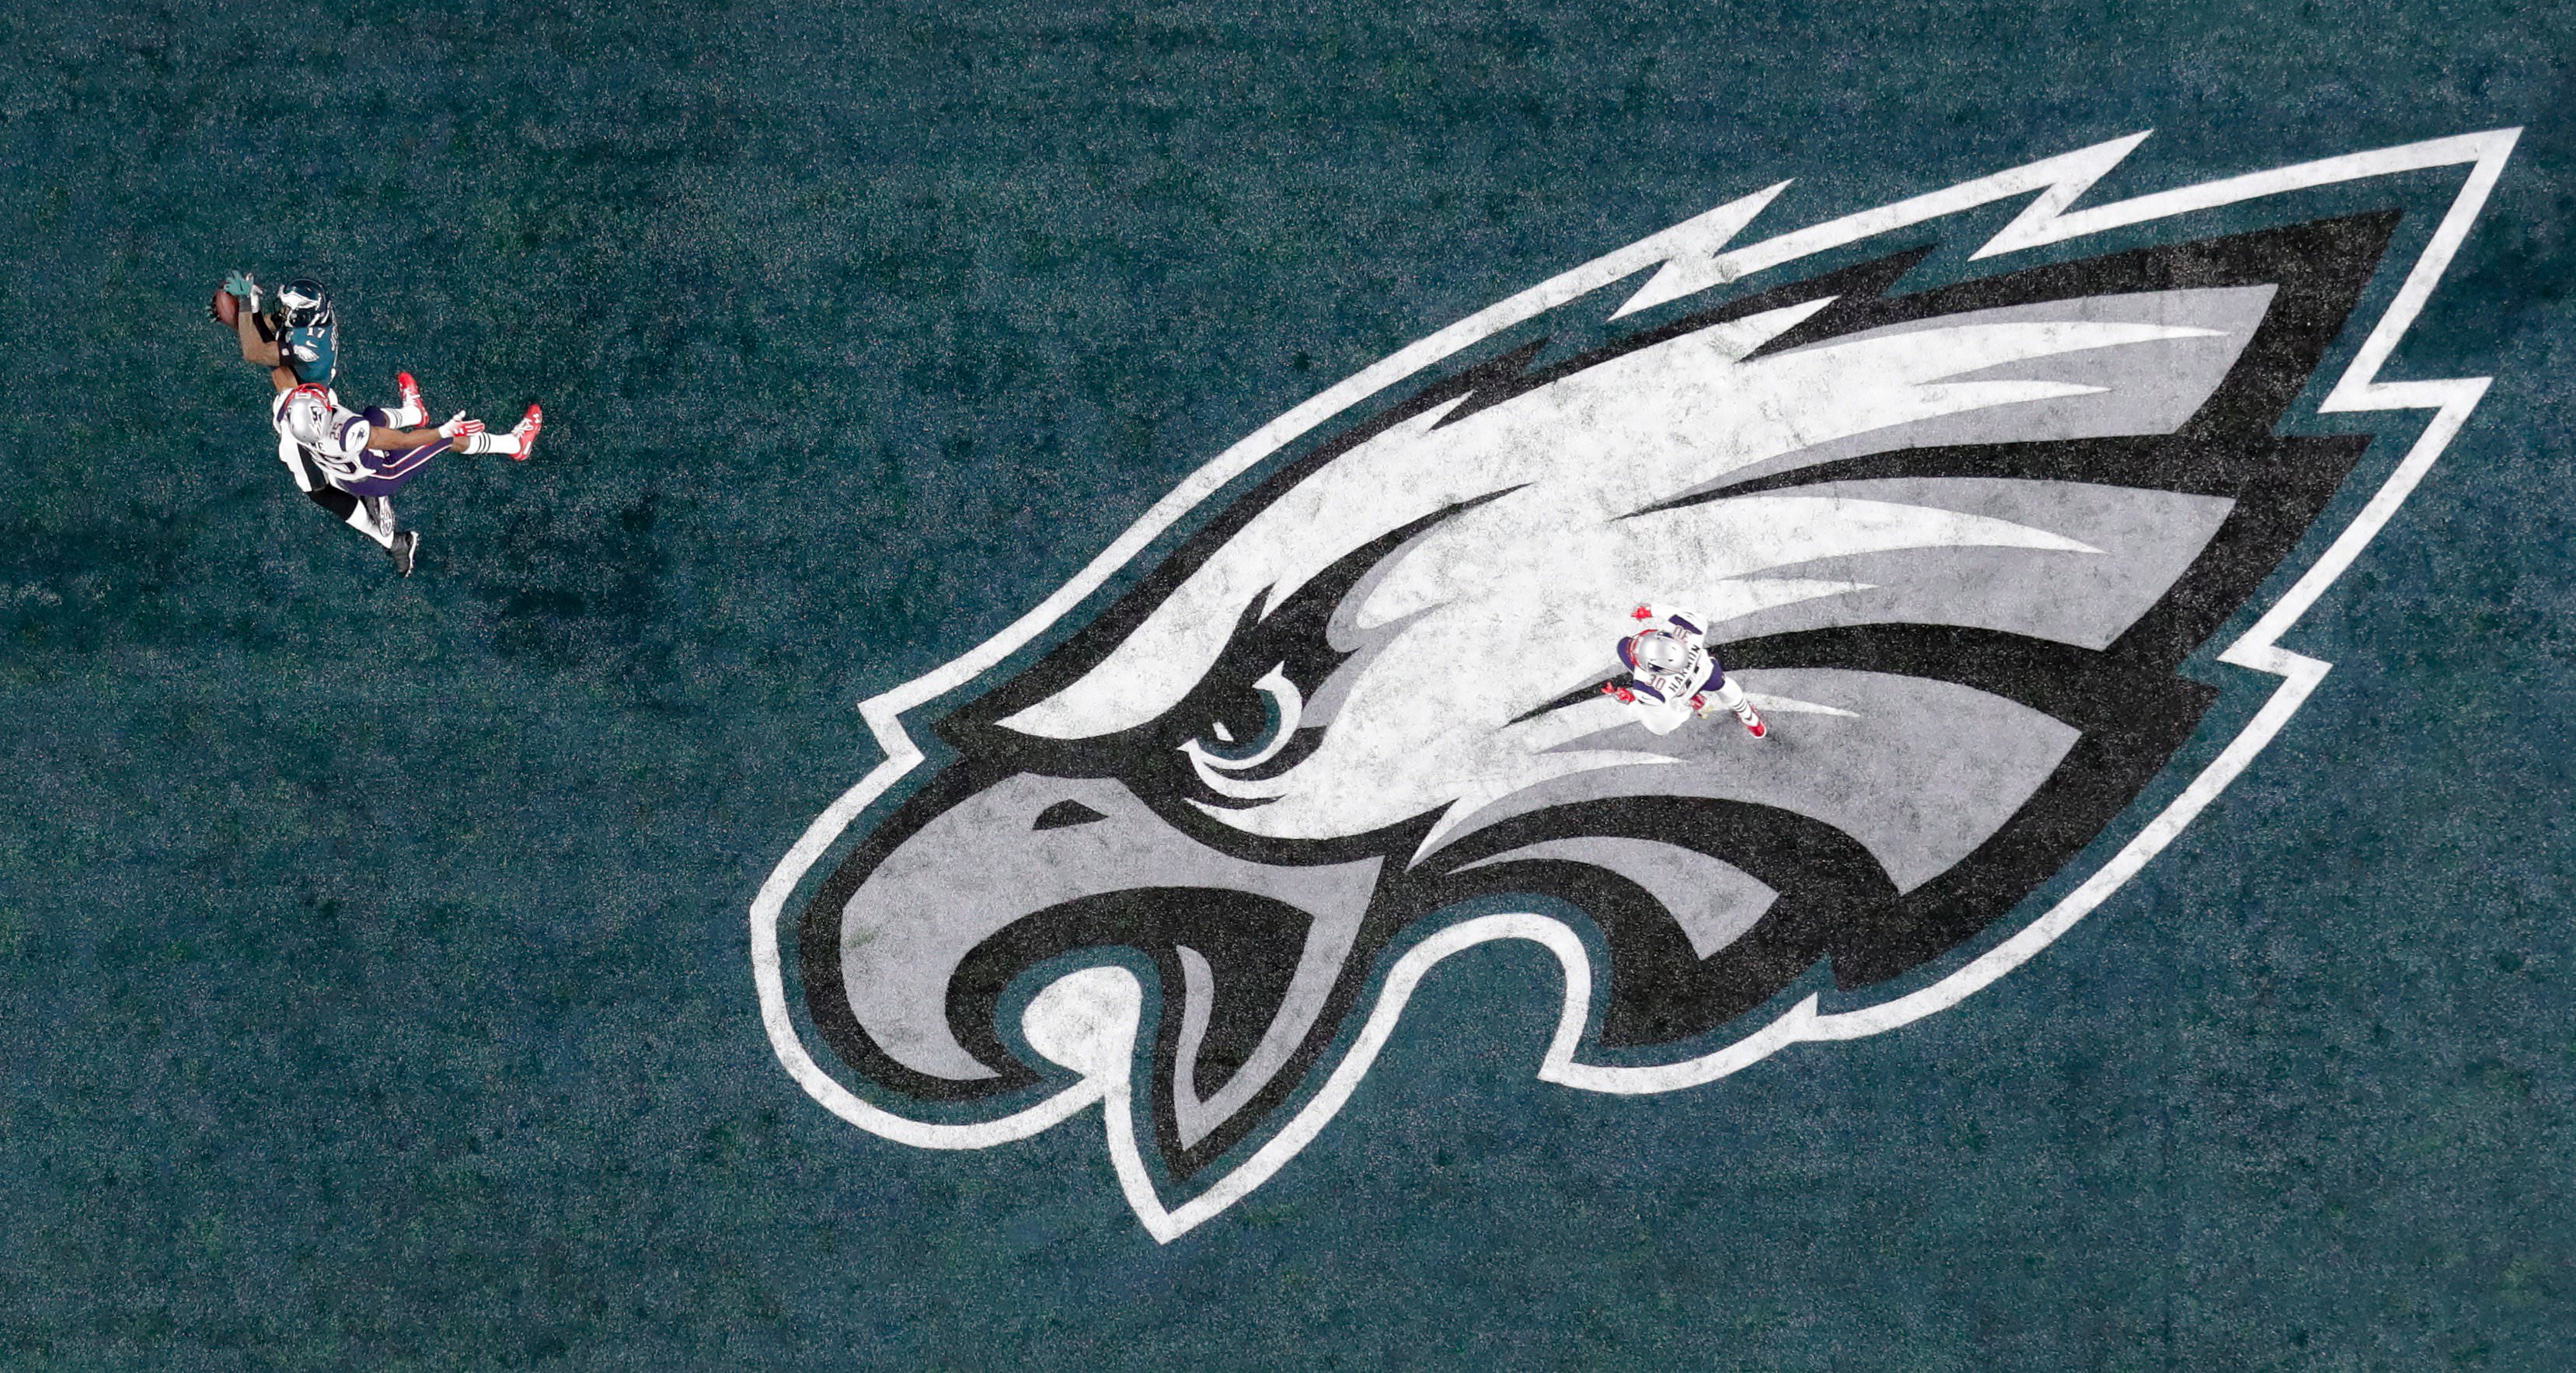 Alshon Jeffery Super Bowl Touchdown - HD Wallpaper 